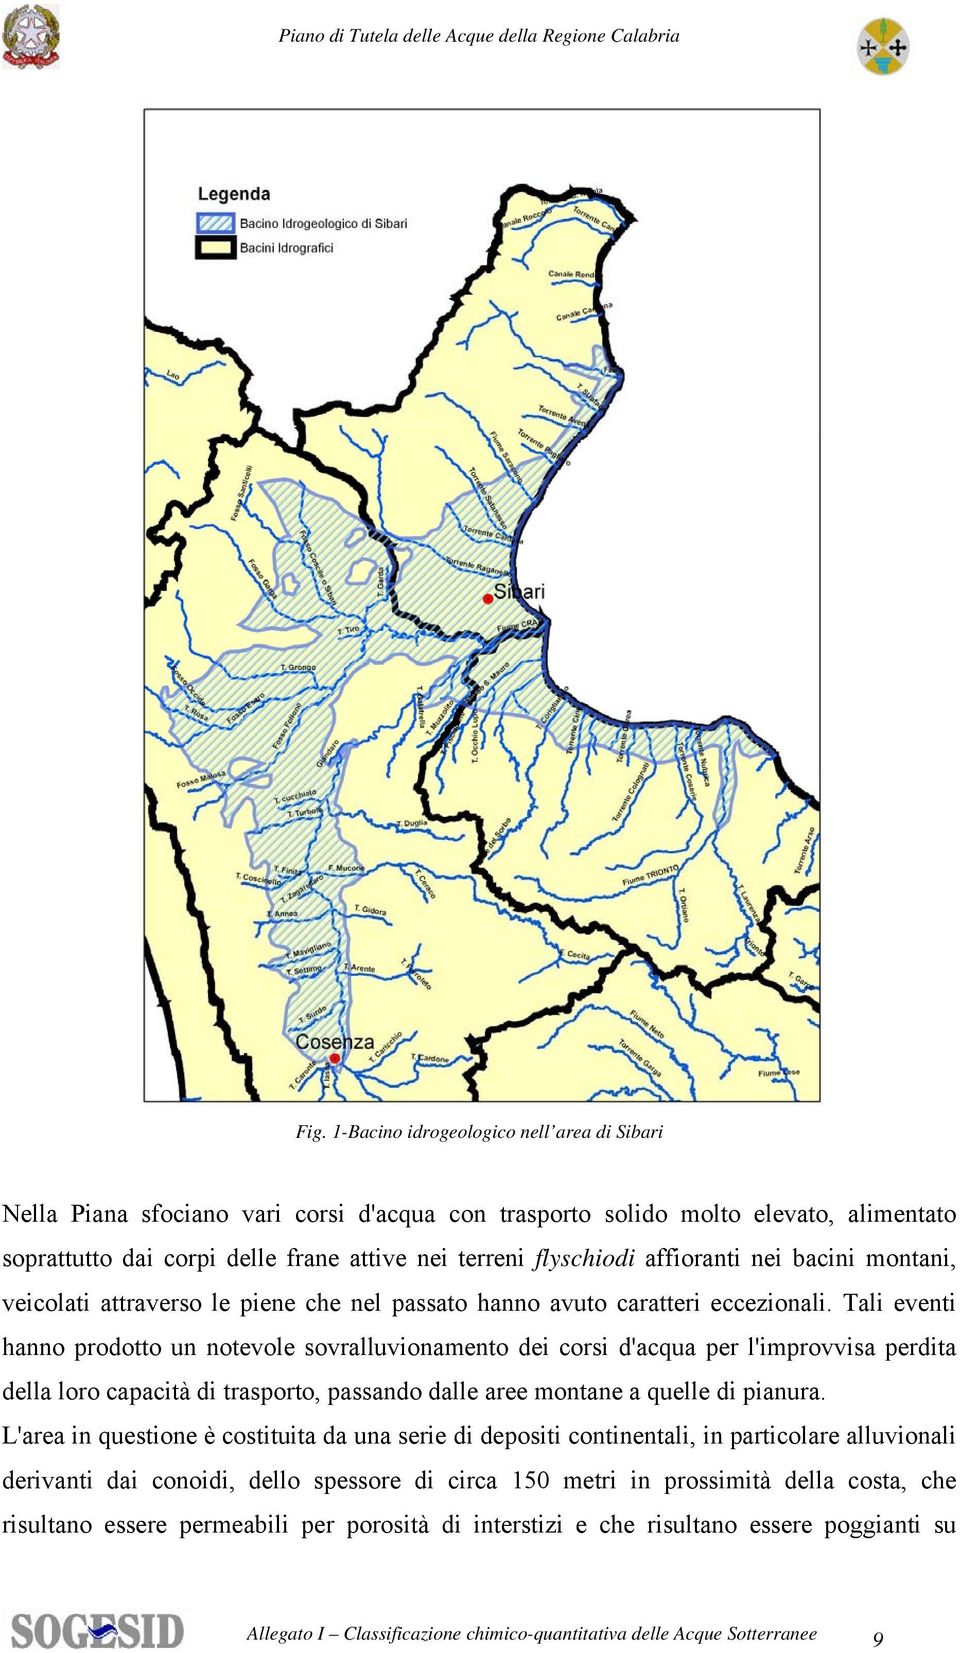 Tali eventi hanno prodotto un notevole sovralluvionamento dei corsi d'acqua per l'improvvisa perdita della loro capacità di trasporto, passando dalle aree montane a quelle di pianura.